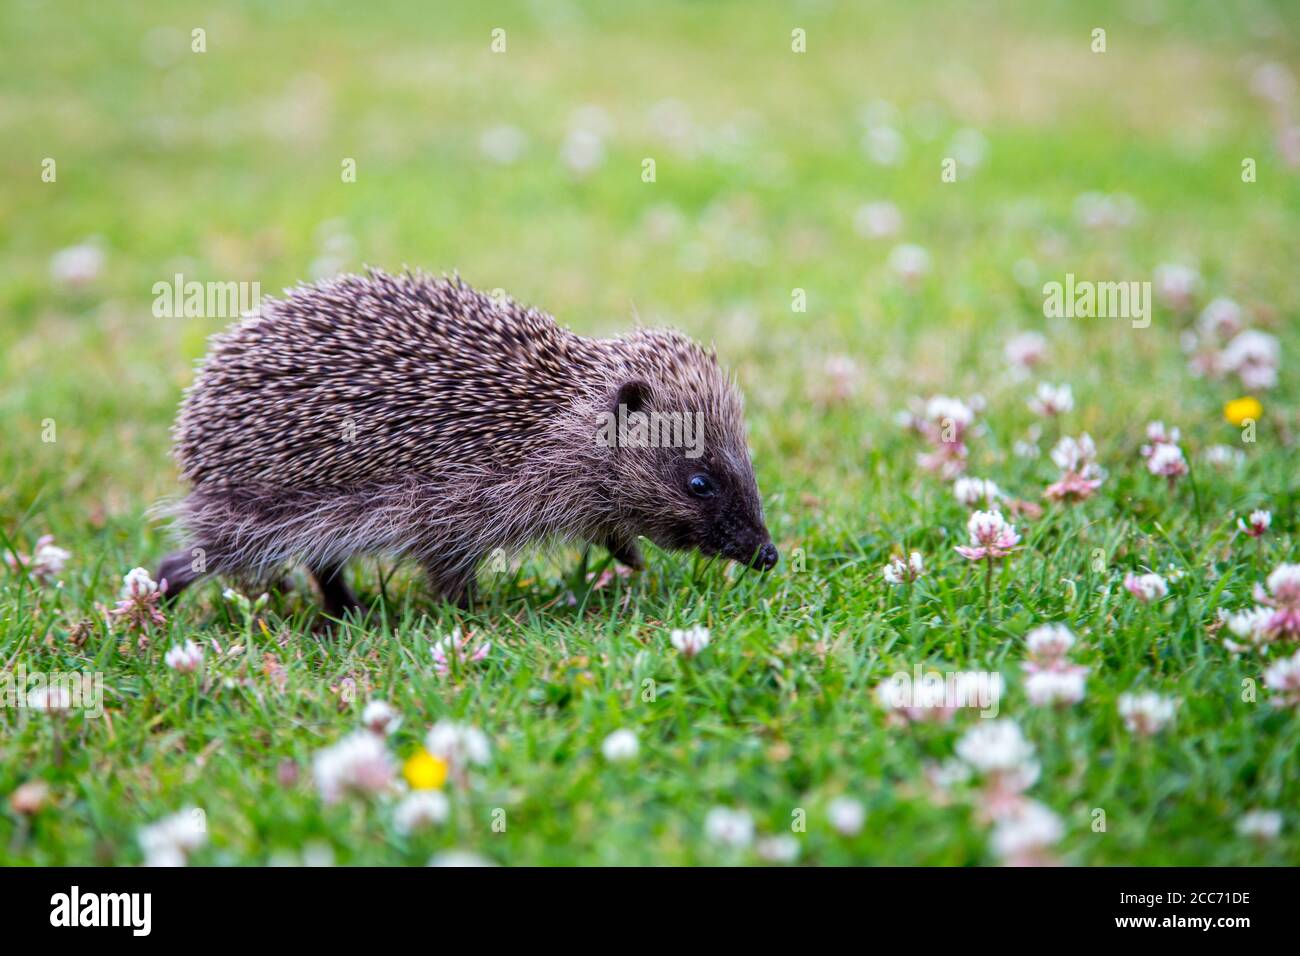 Juvenille Hedgehog in an English garden Stock Photo